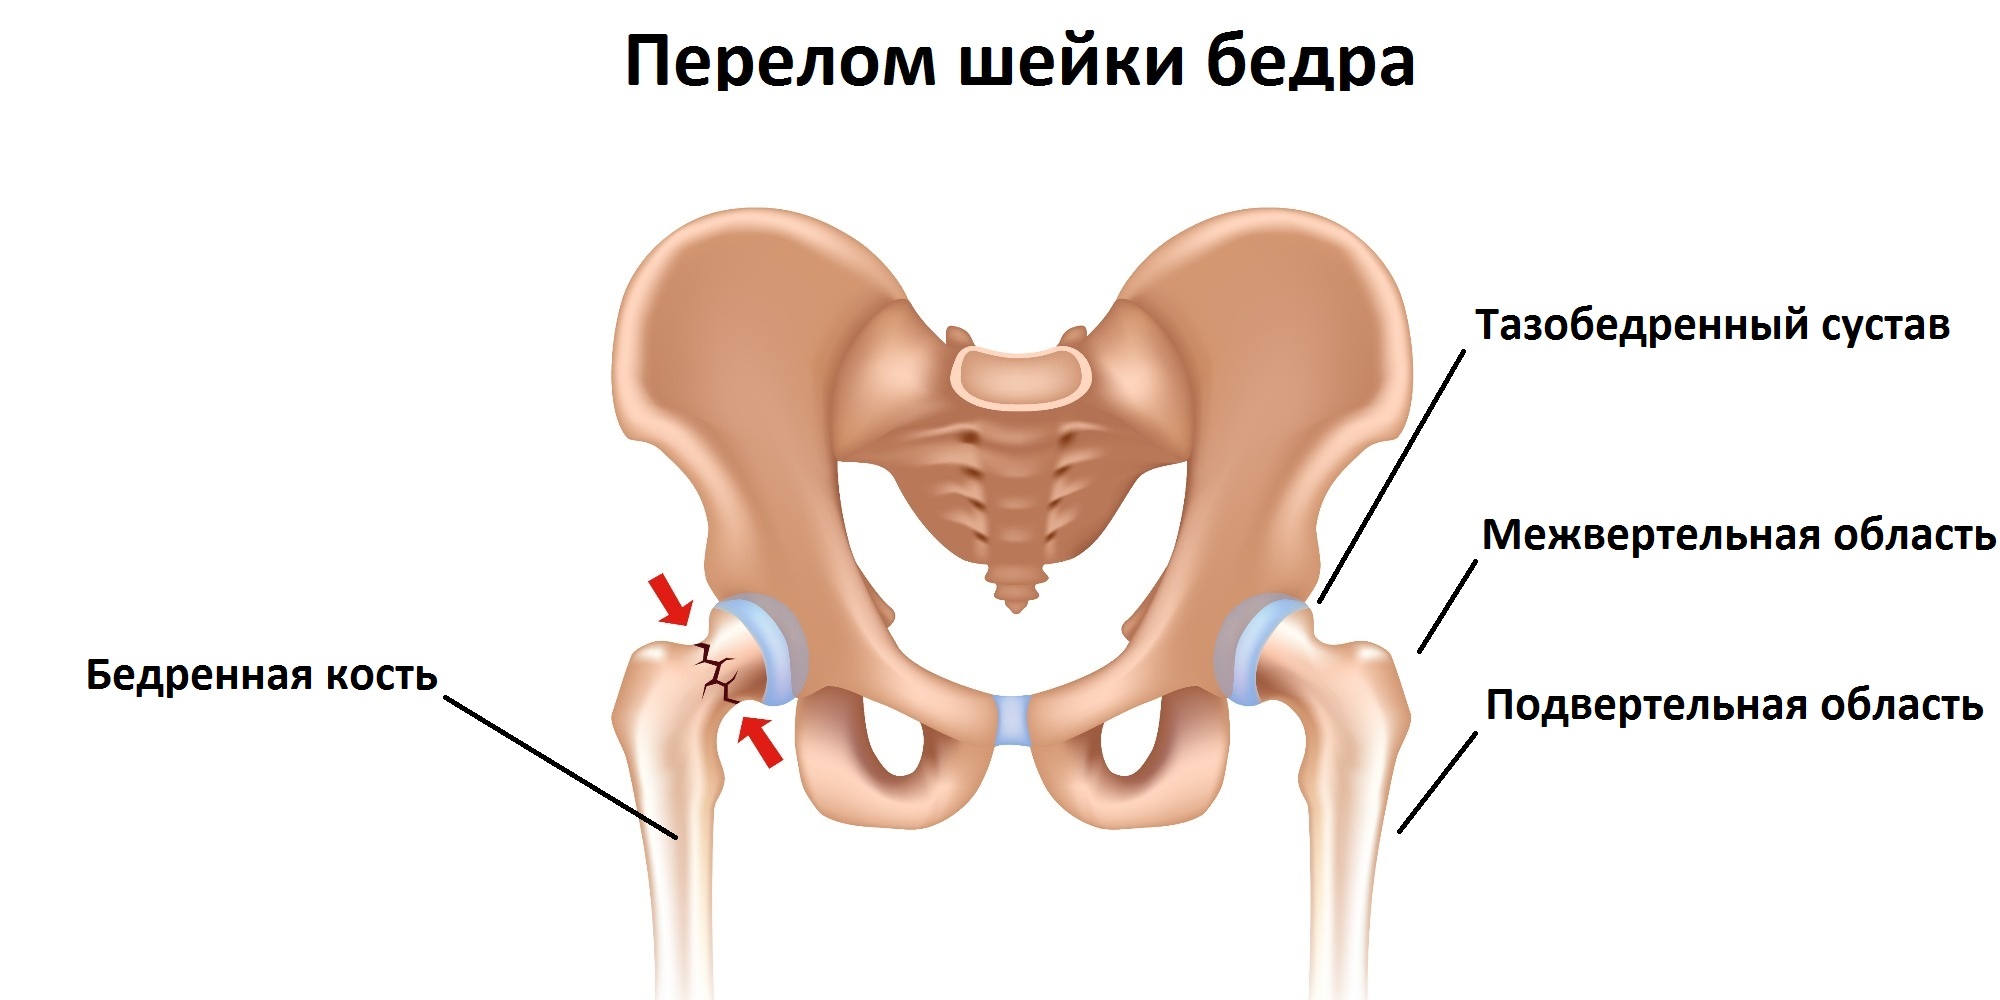 Тазобедренный сустав операция показать. Шейка тазобедренного сустава перелом. Перелом тазобедренного сустава и кости. Шейка бедра у человека перелом. Перелом шейки тазовой кости.